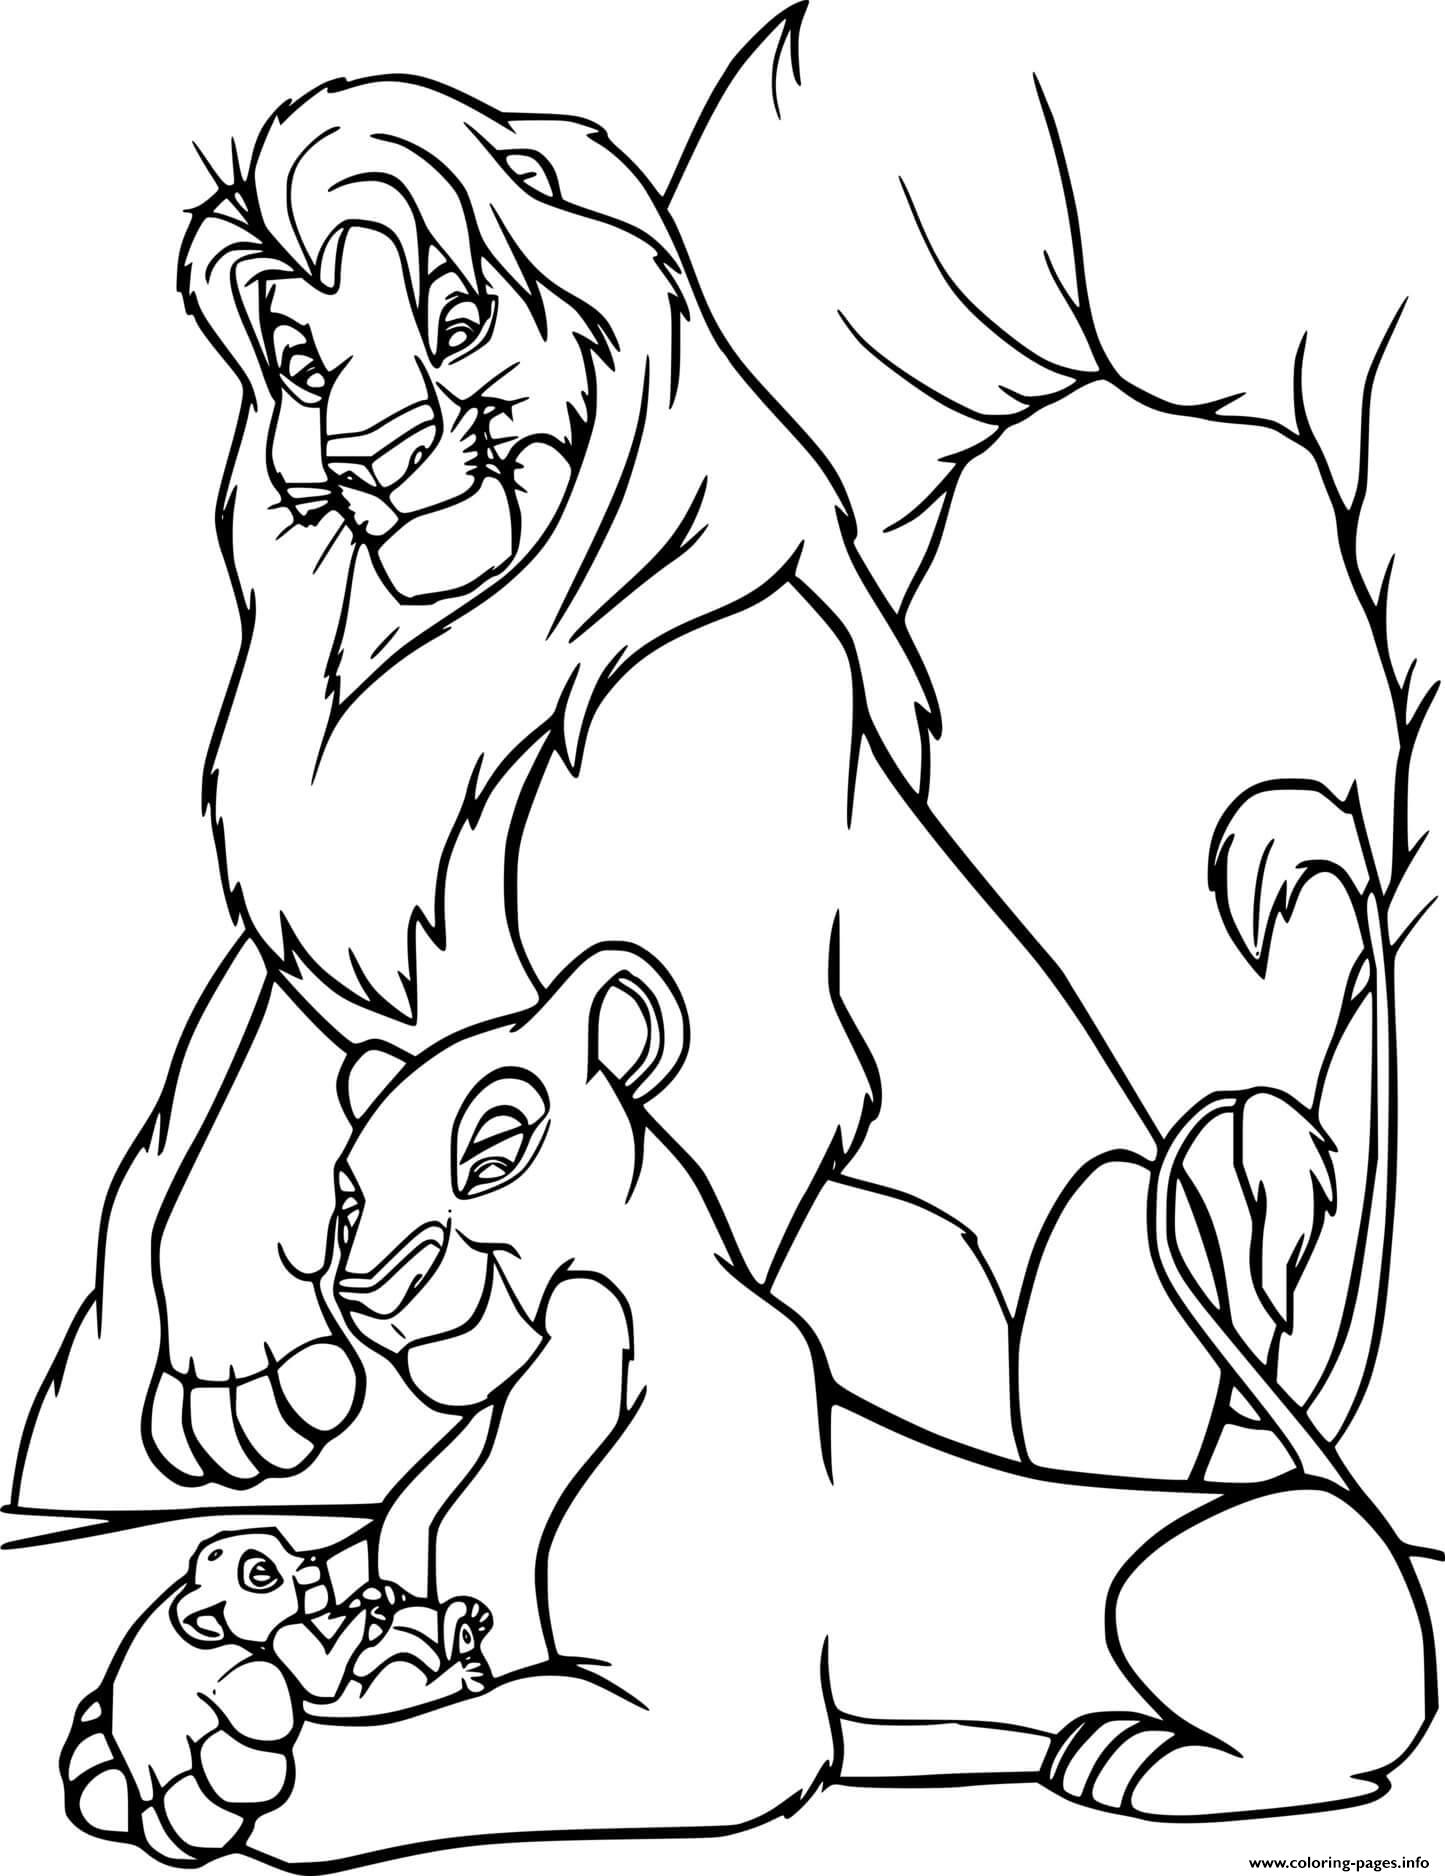 Mufasa And Sarabi With Simba coloring